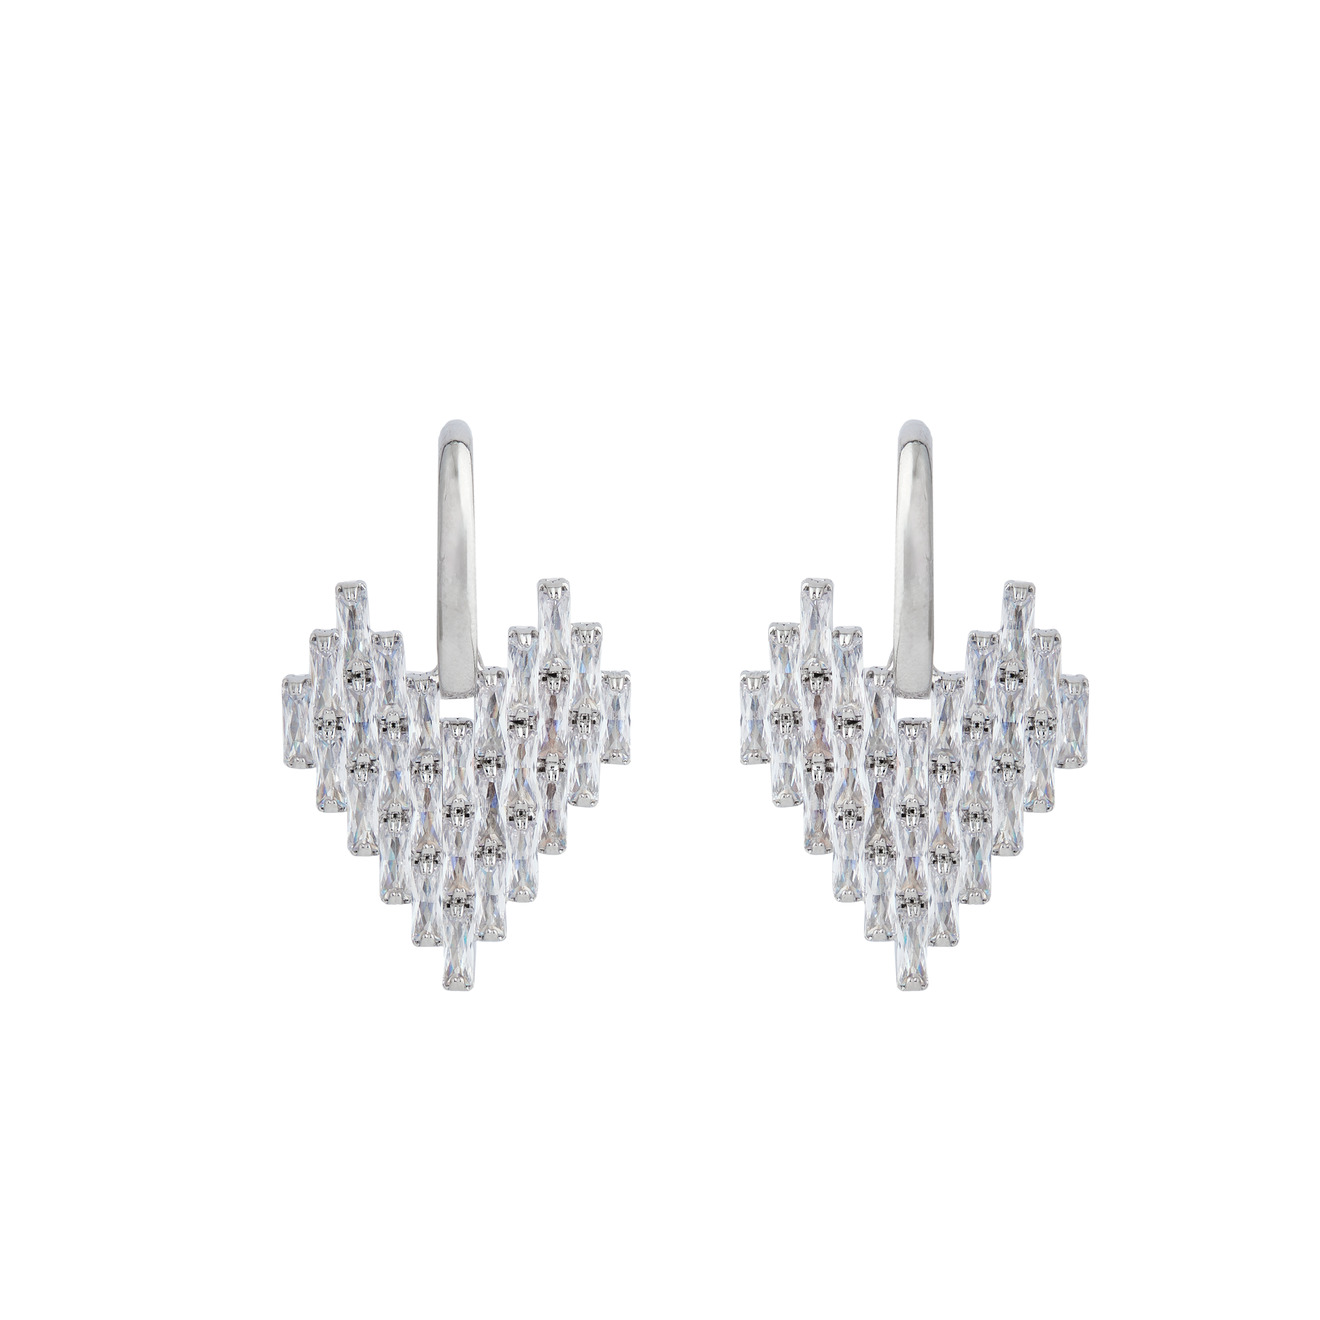 Herald Percy Серебристые серьги-сердца с багетами кристаллов herald percy серебристые серьги хупы с дорожкой из белых кристаллов